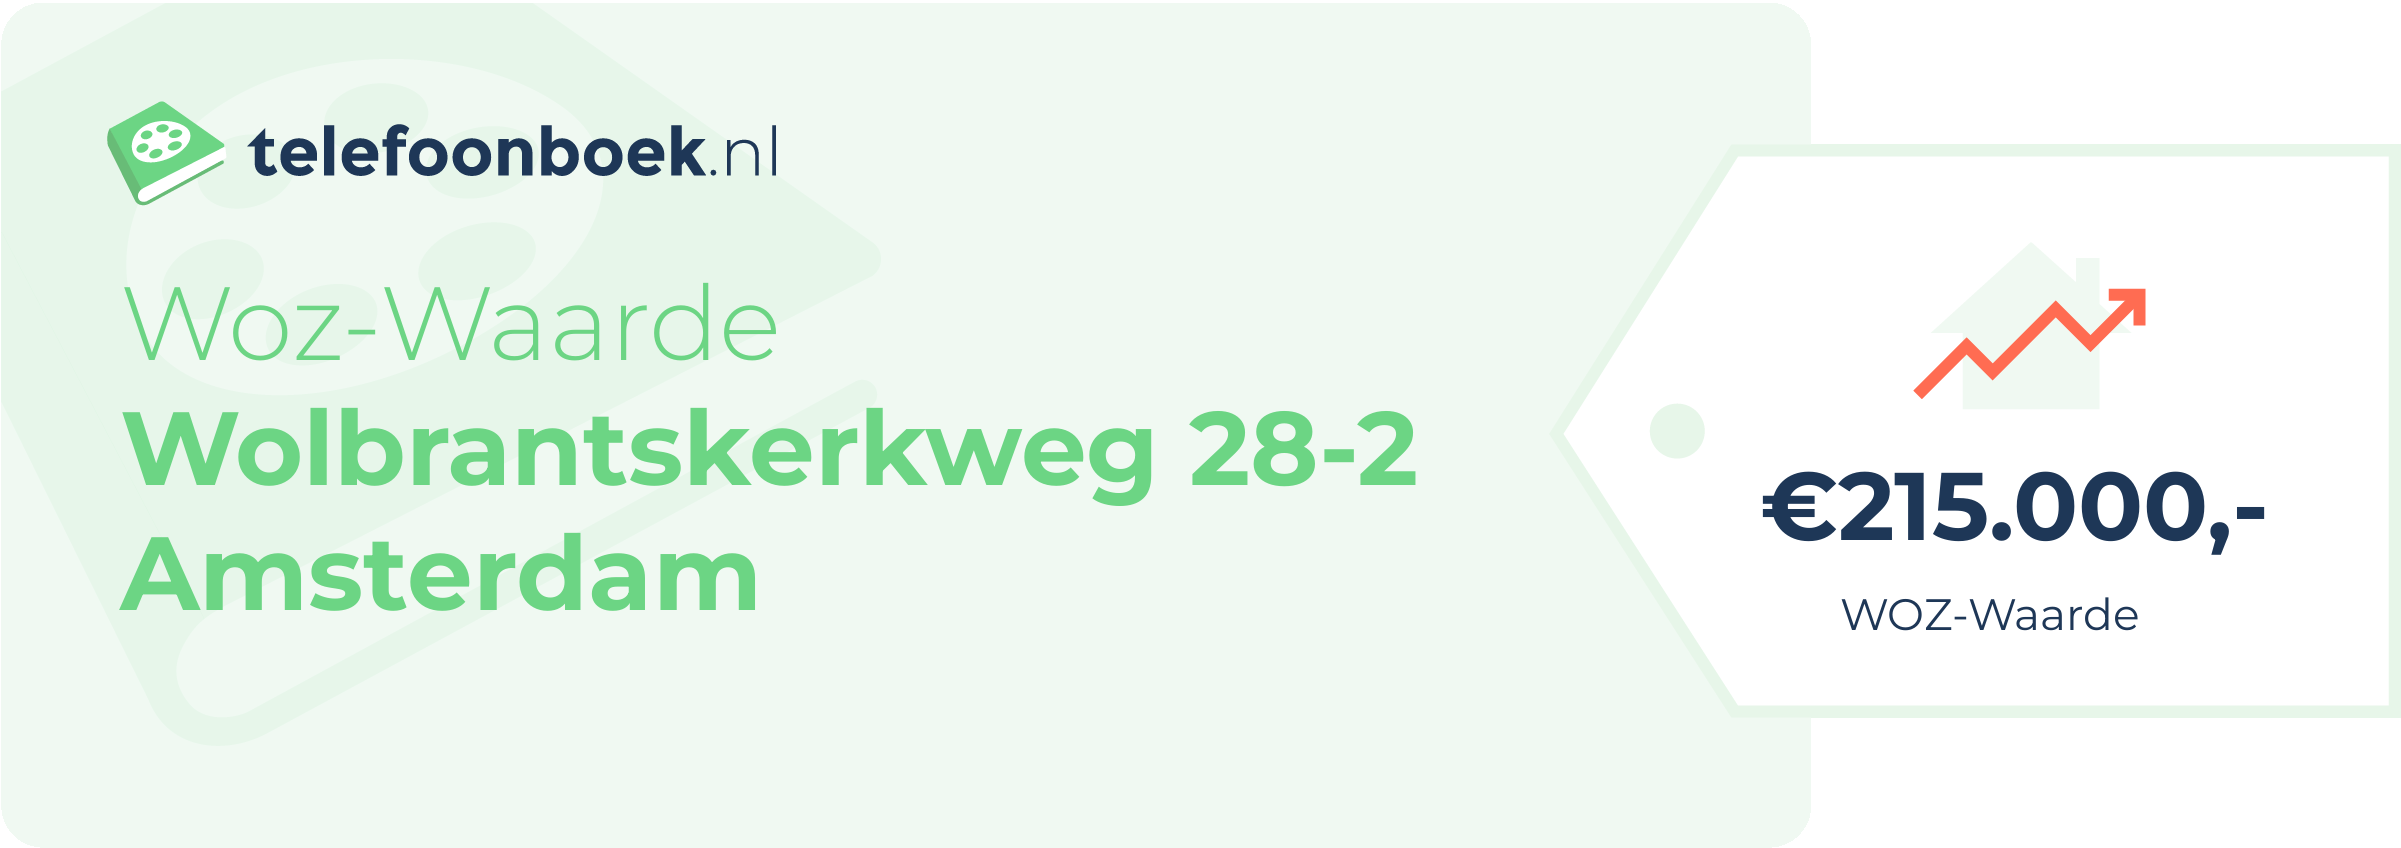 WOZ-waarde Wolbrantskerkweg 28-2 Amsterdam